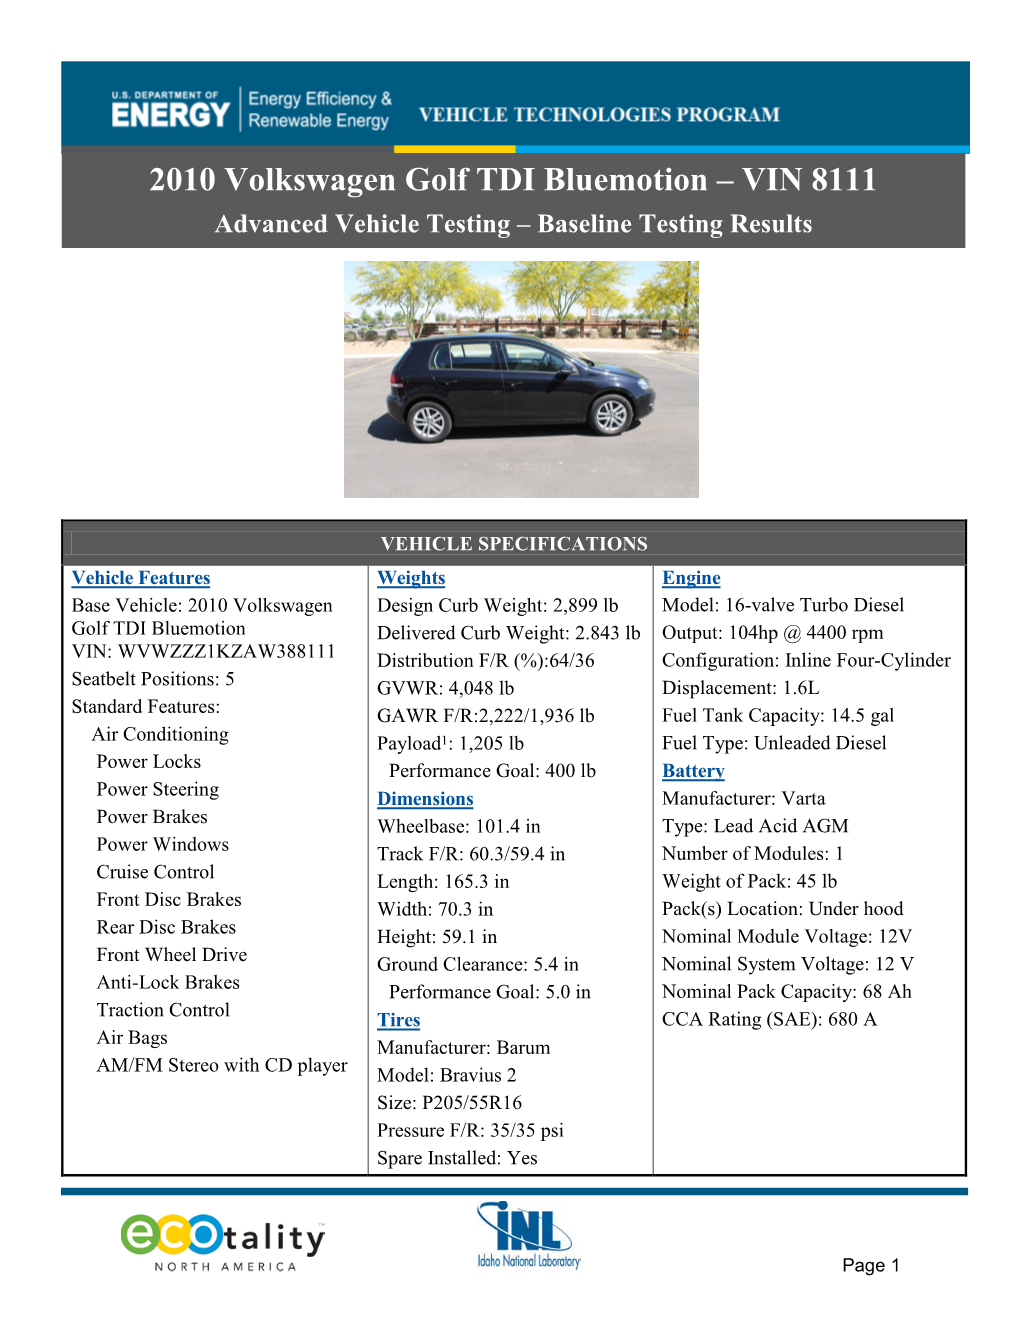 2010 Volswagen Golf TDI Bluemotion